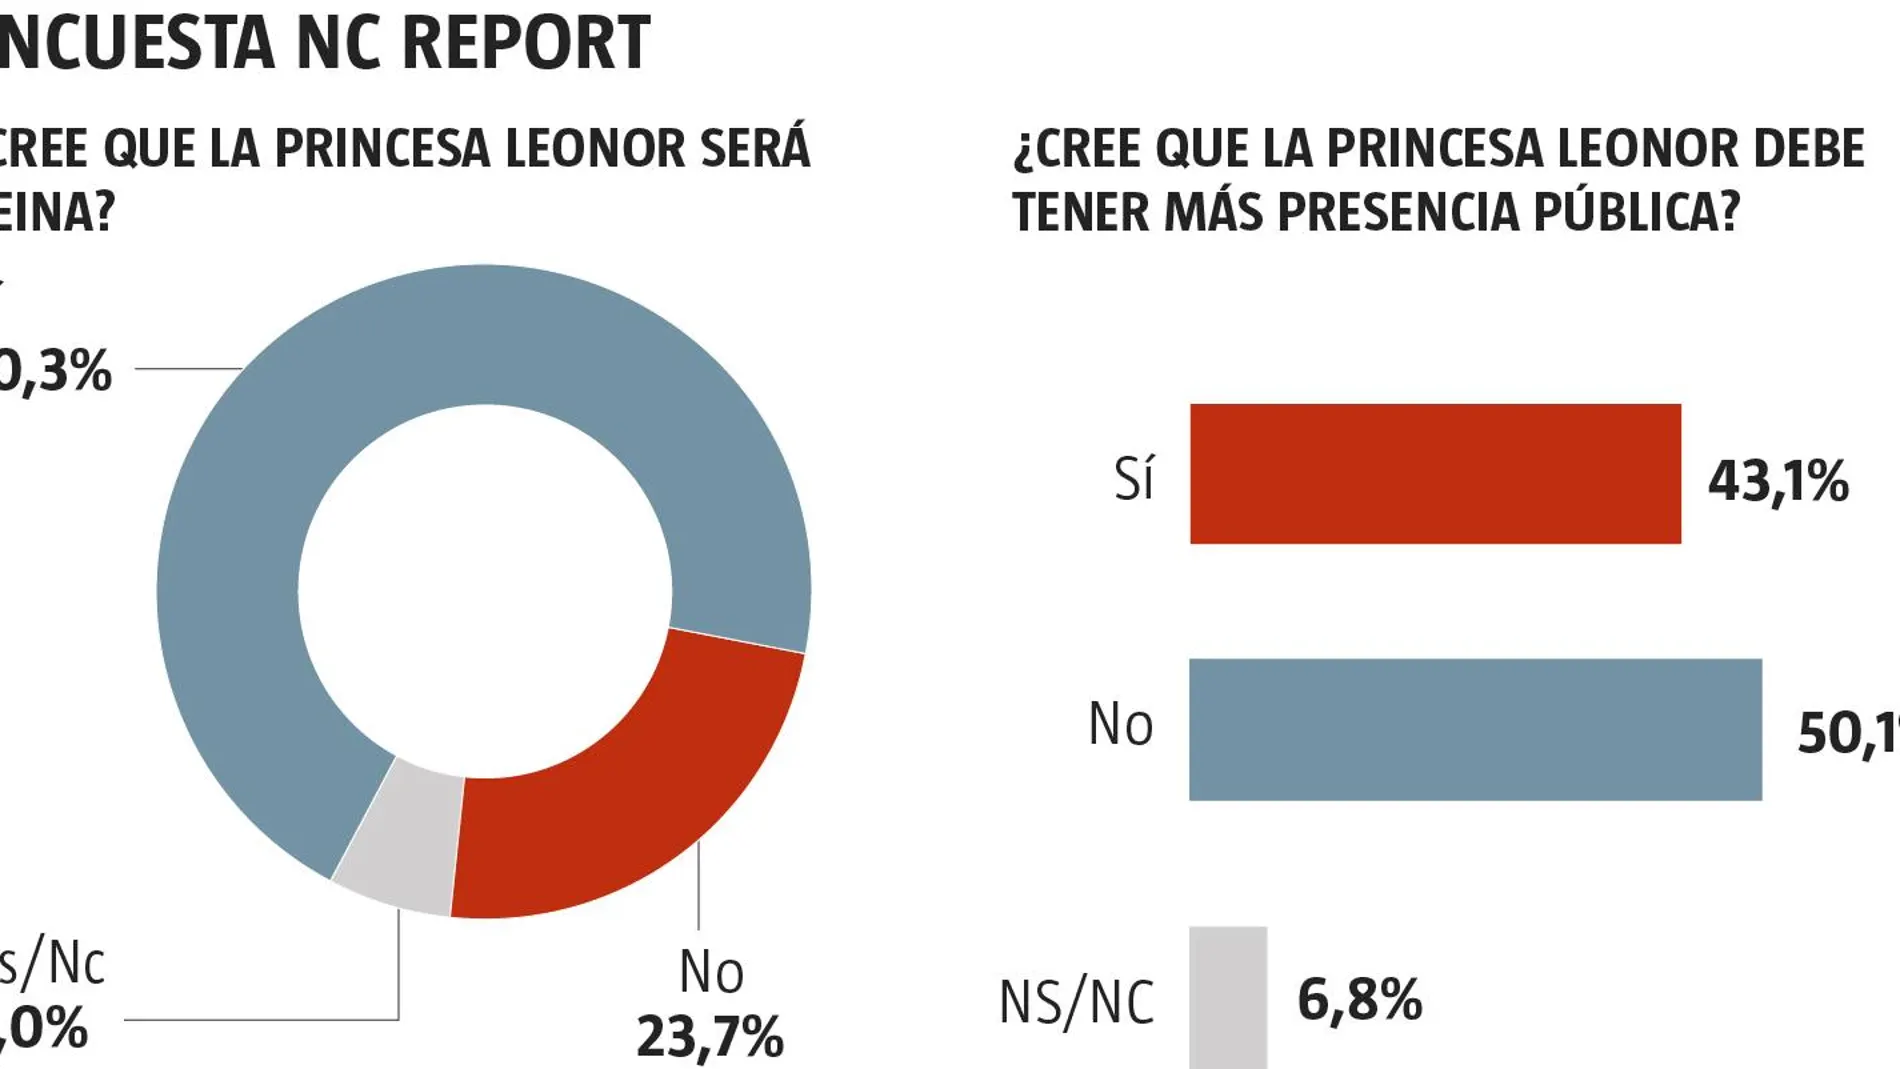 El 70,3% cree que la Princesa Leonor llegará a reinar